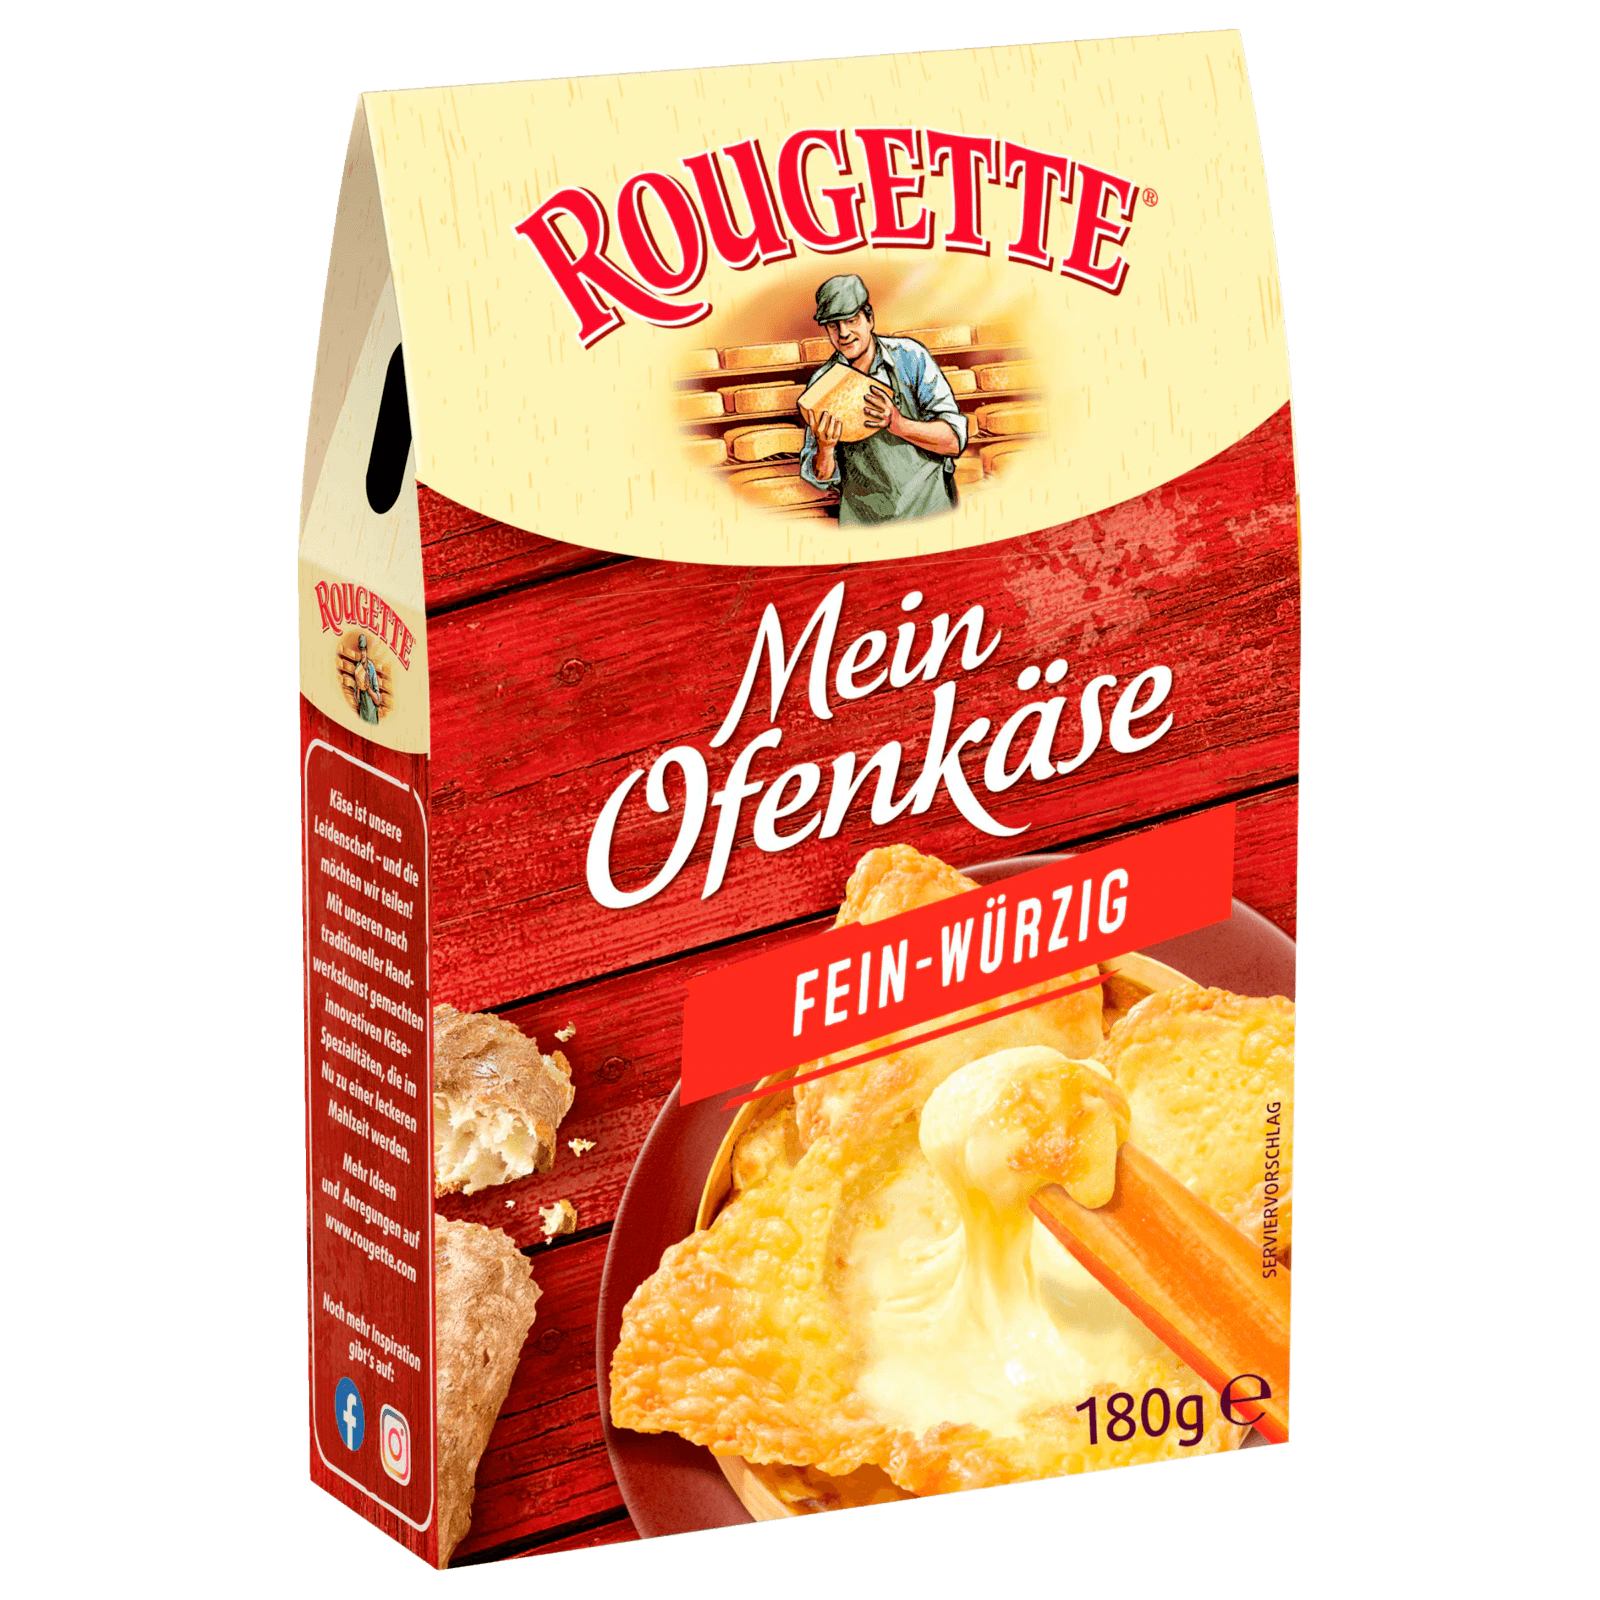 Rougette Ofenkäse bestellen! 180g REWE bei online fein-würzig kleine Der